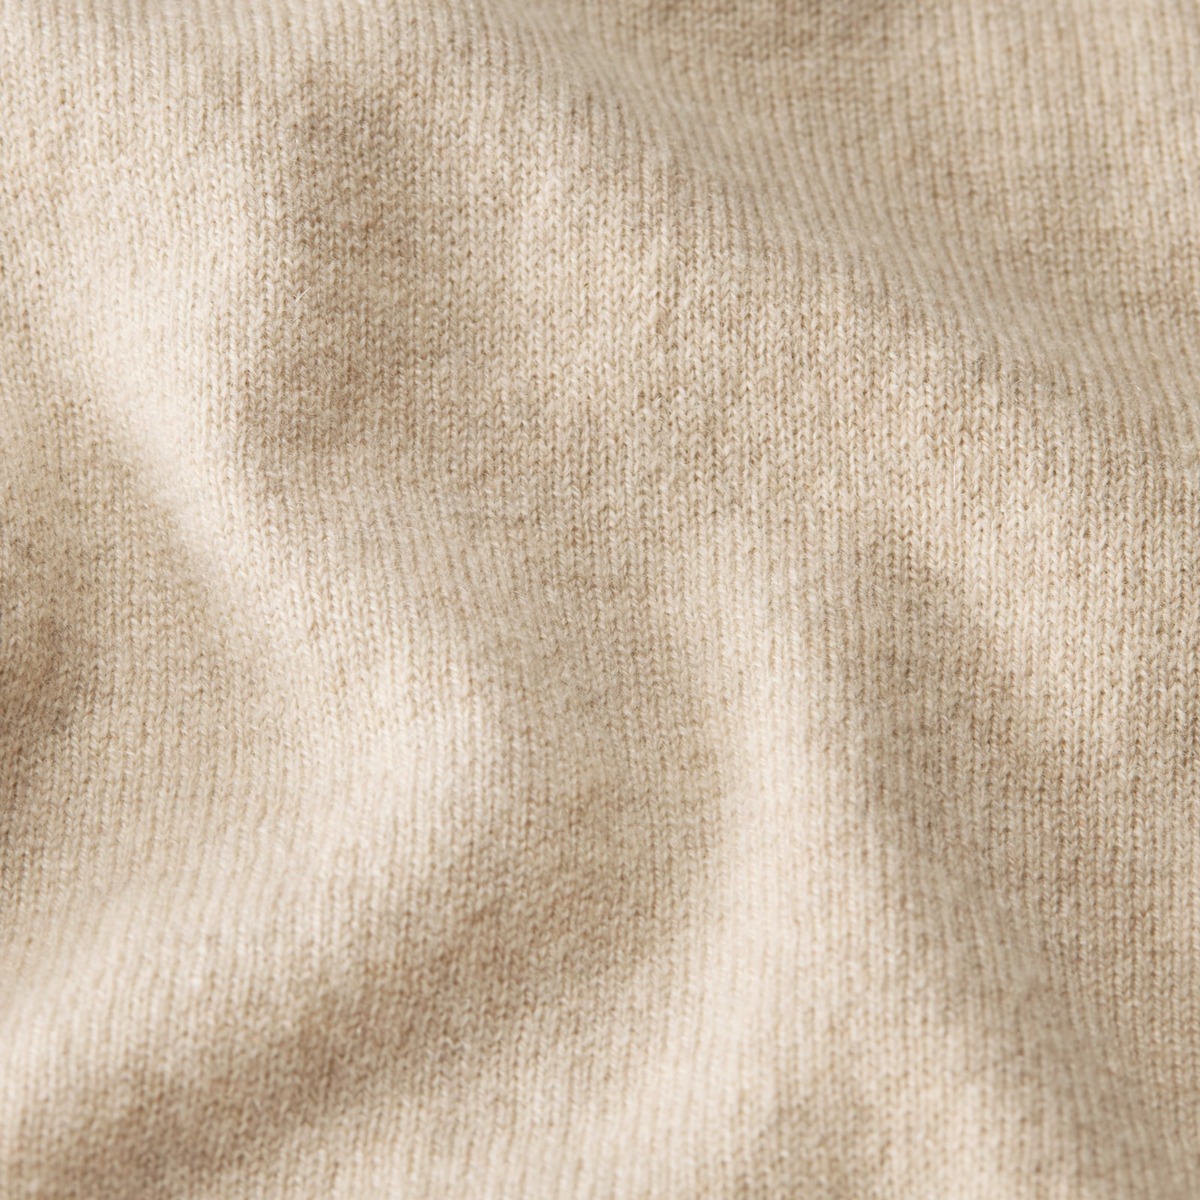 Fabric Closeup of Tan Sferra Intimita Long Sleeve Top